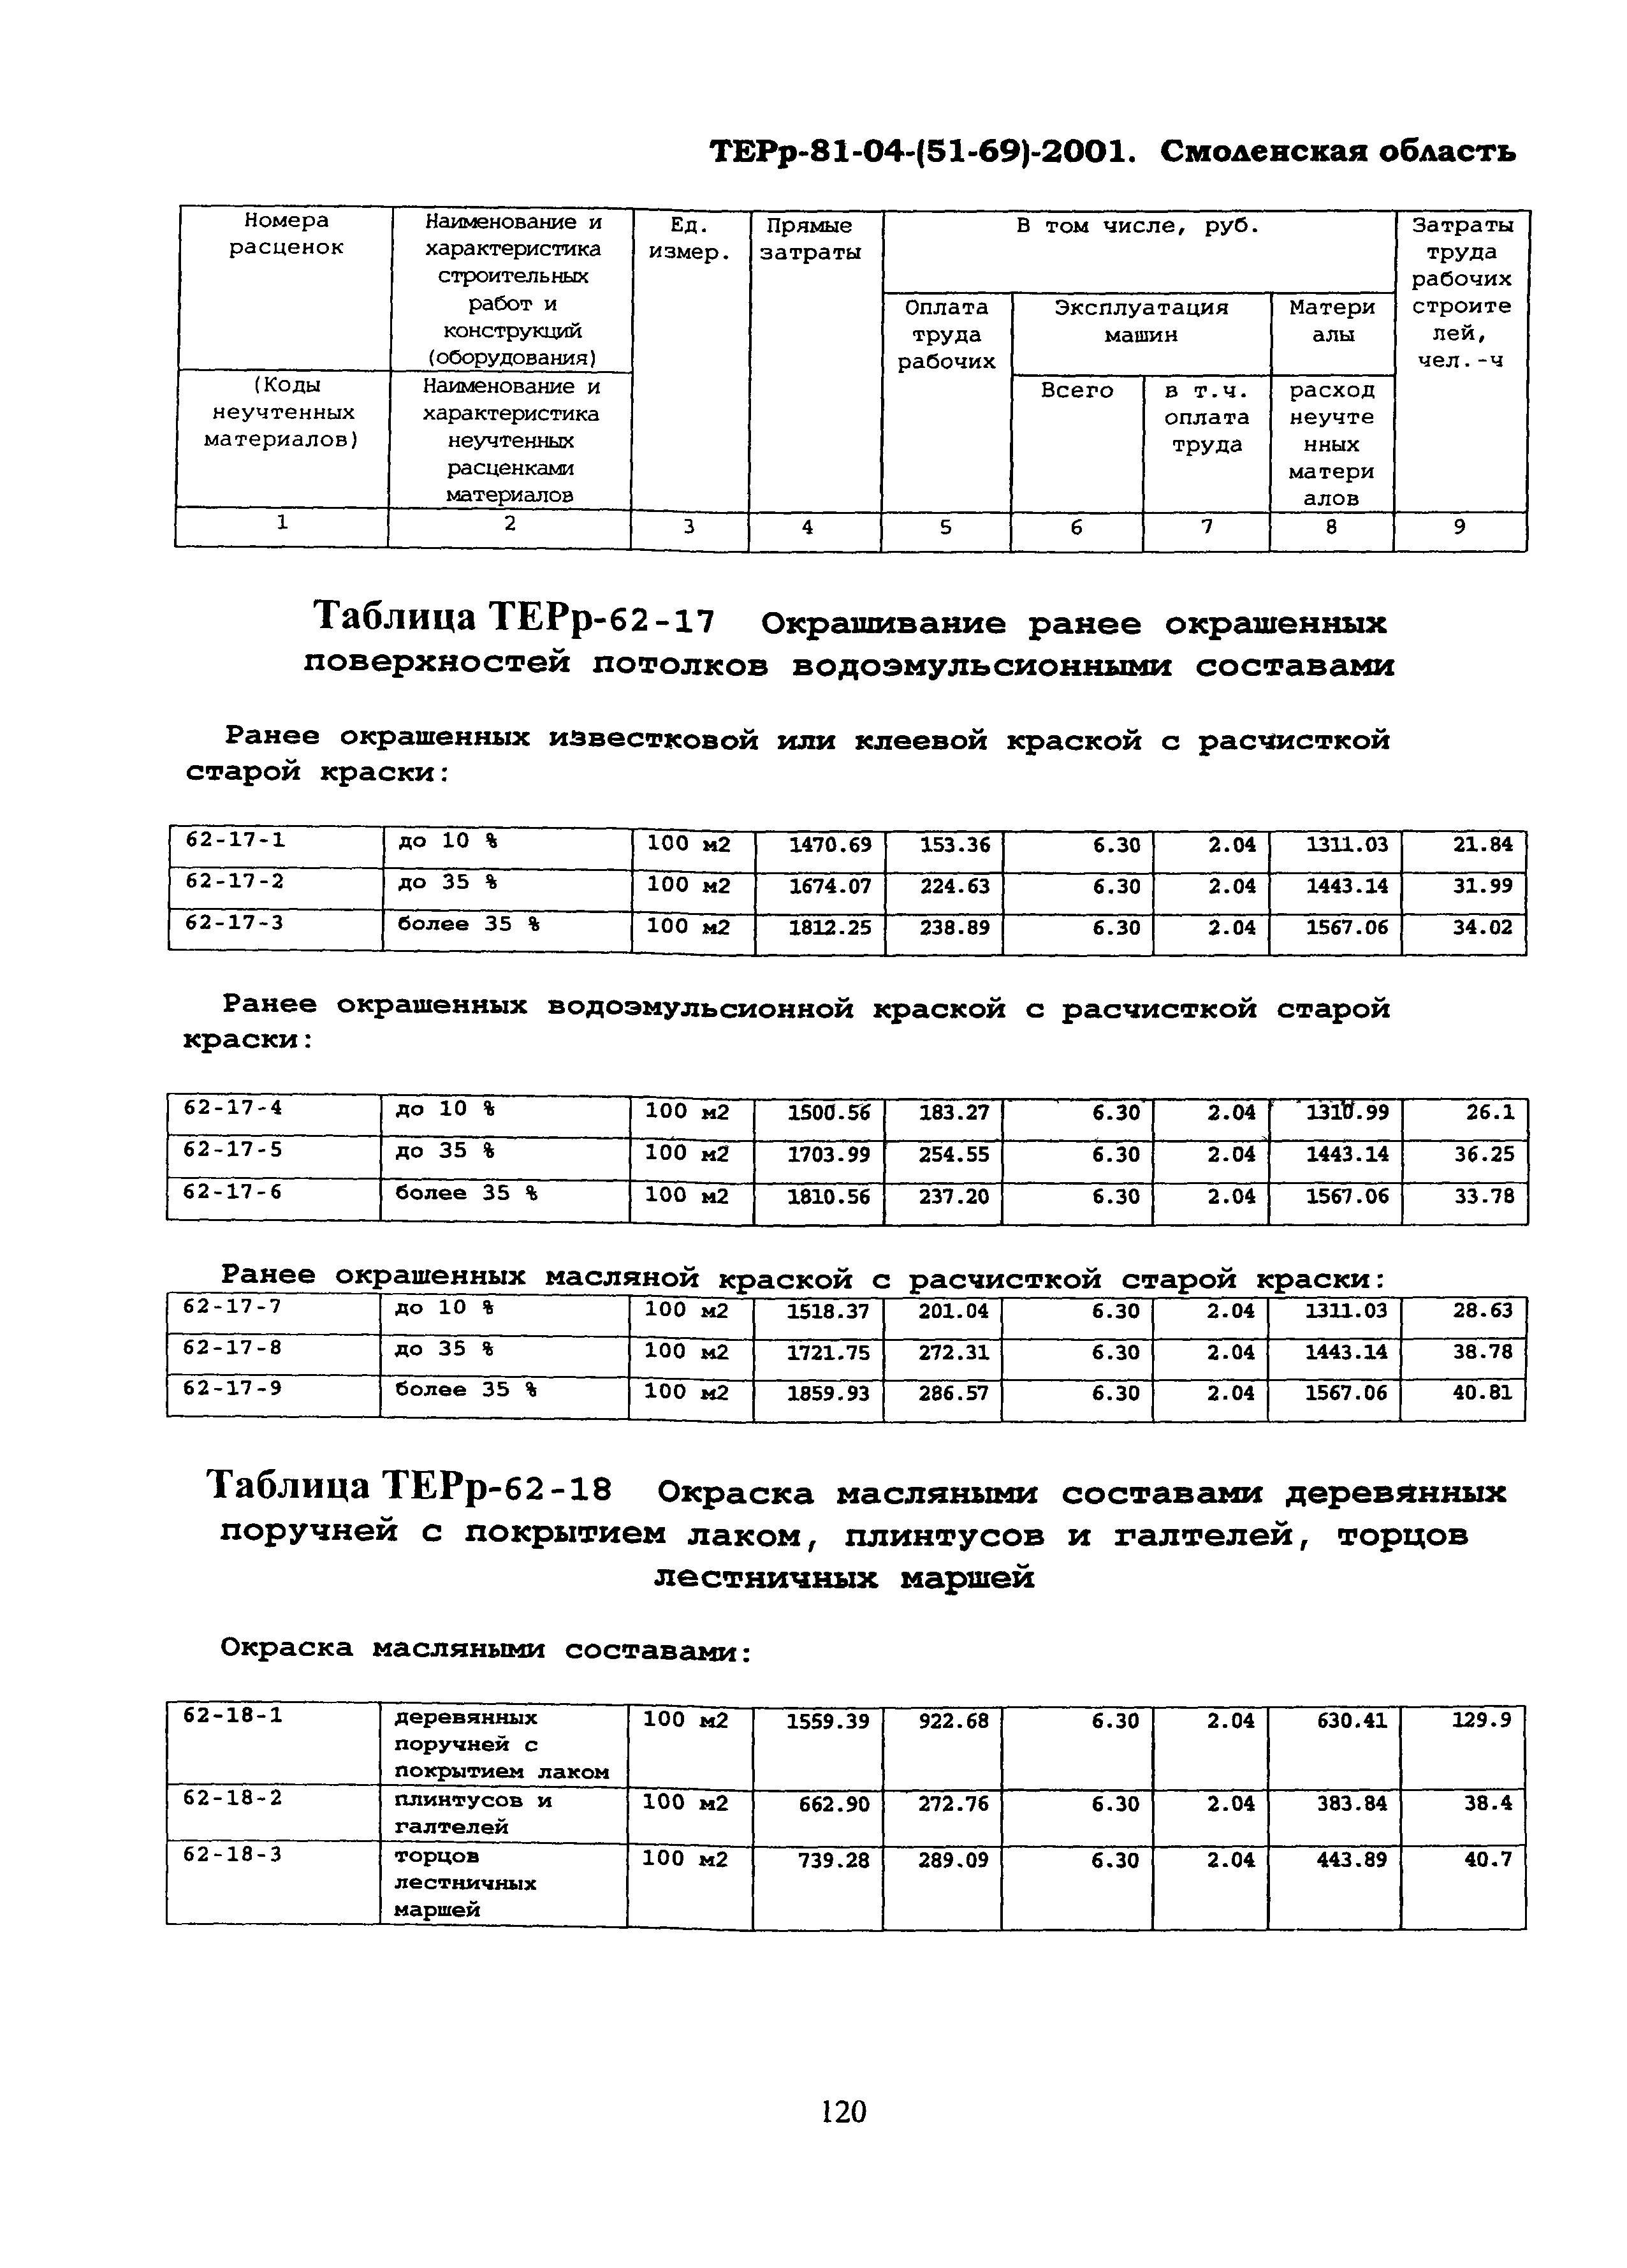 ТЕРр Смоленская область 2001-62